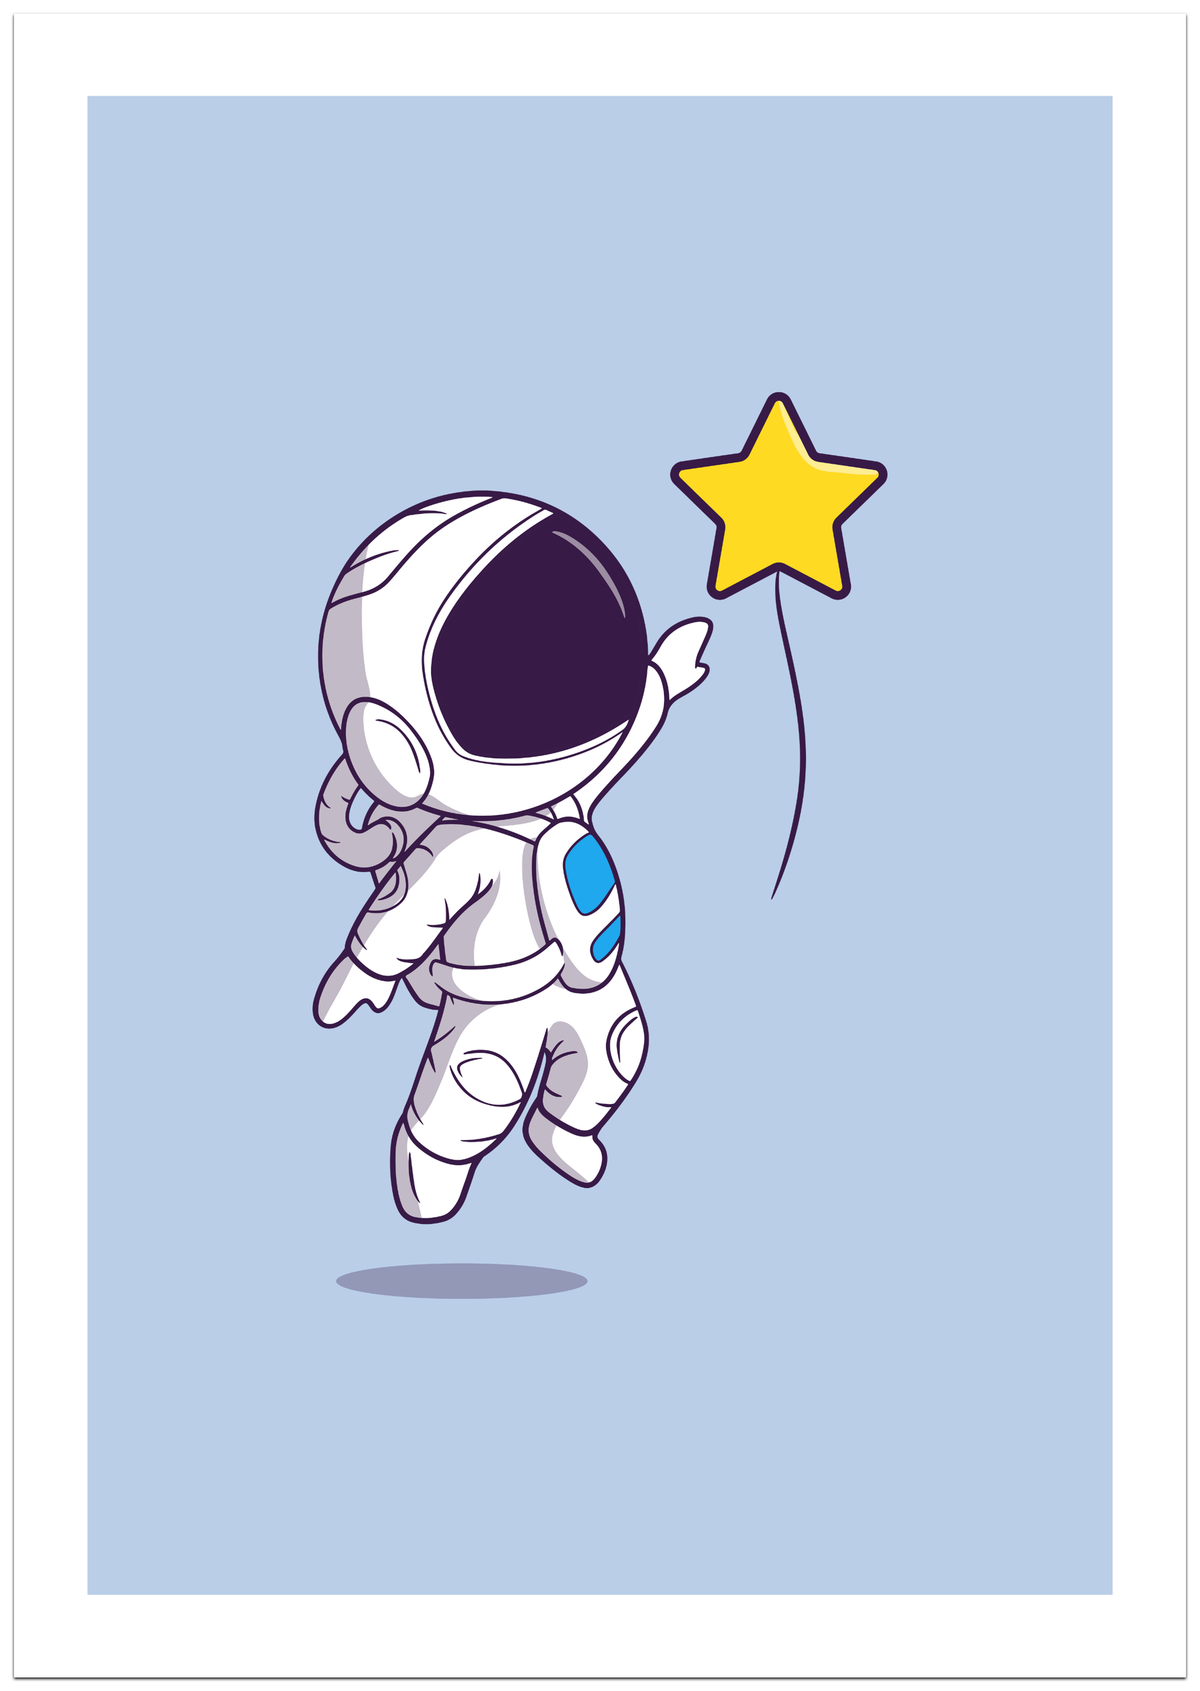 Der kleine Astronaut Poster